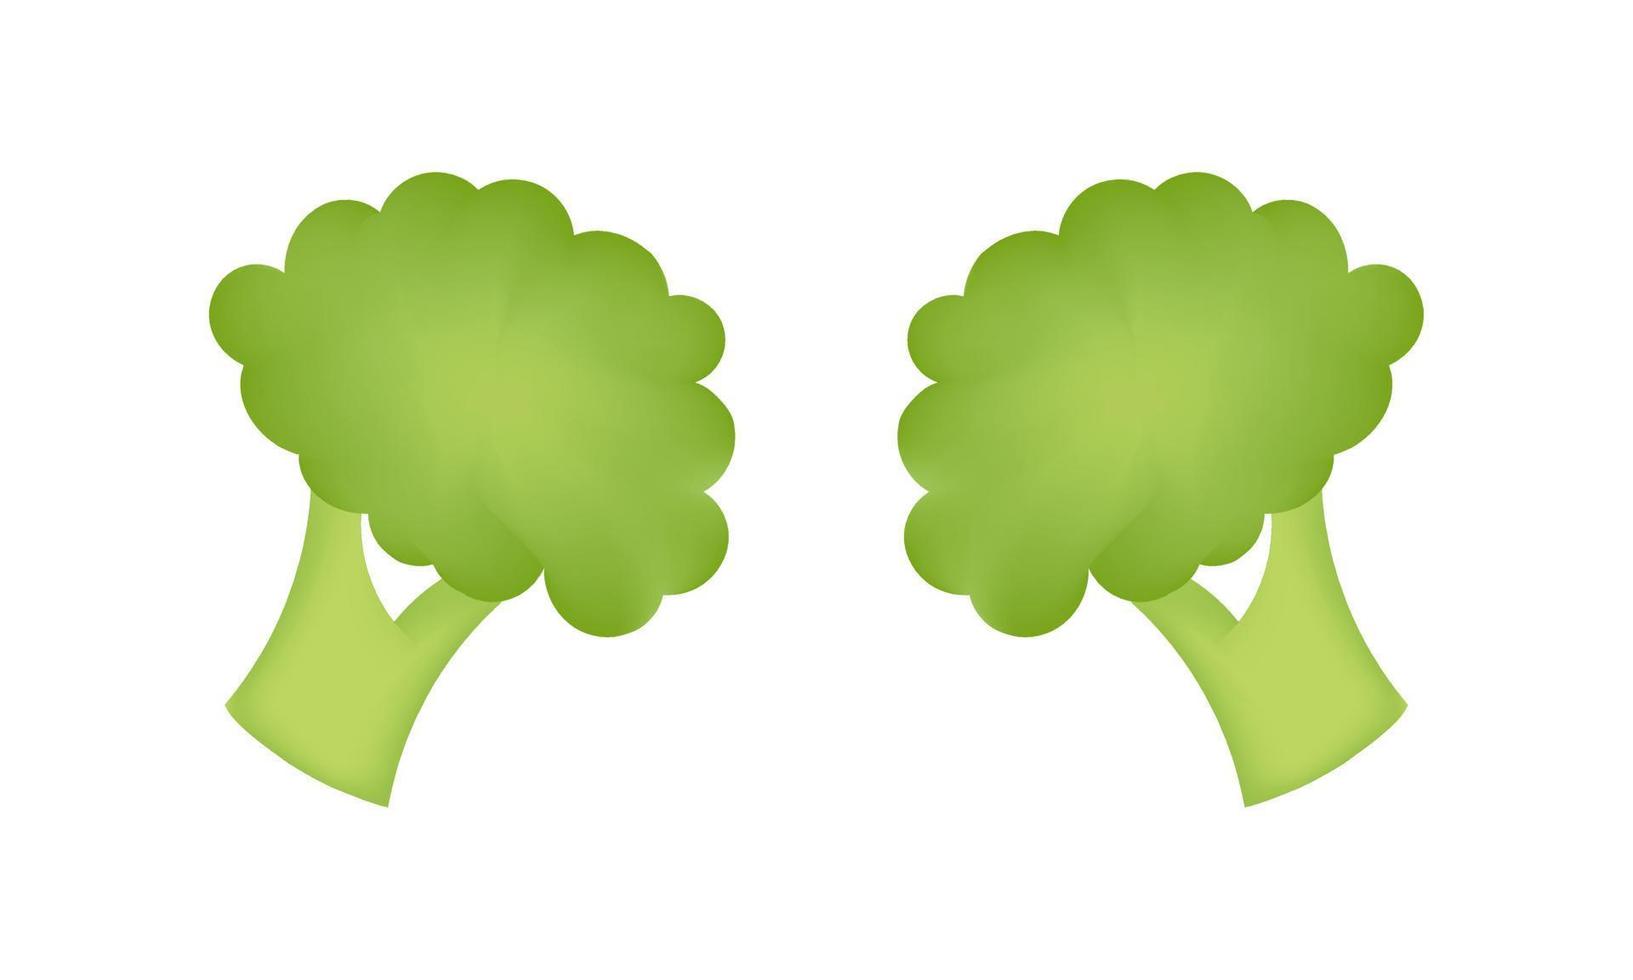 broccoli groente illustratie met maas techniek vector